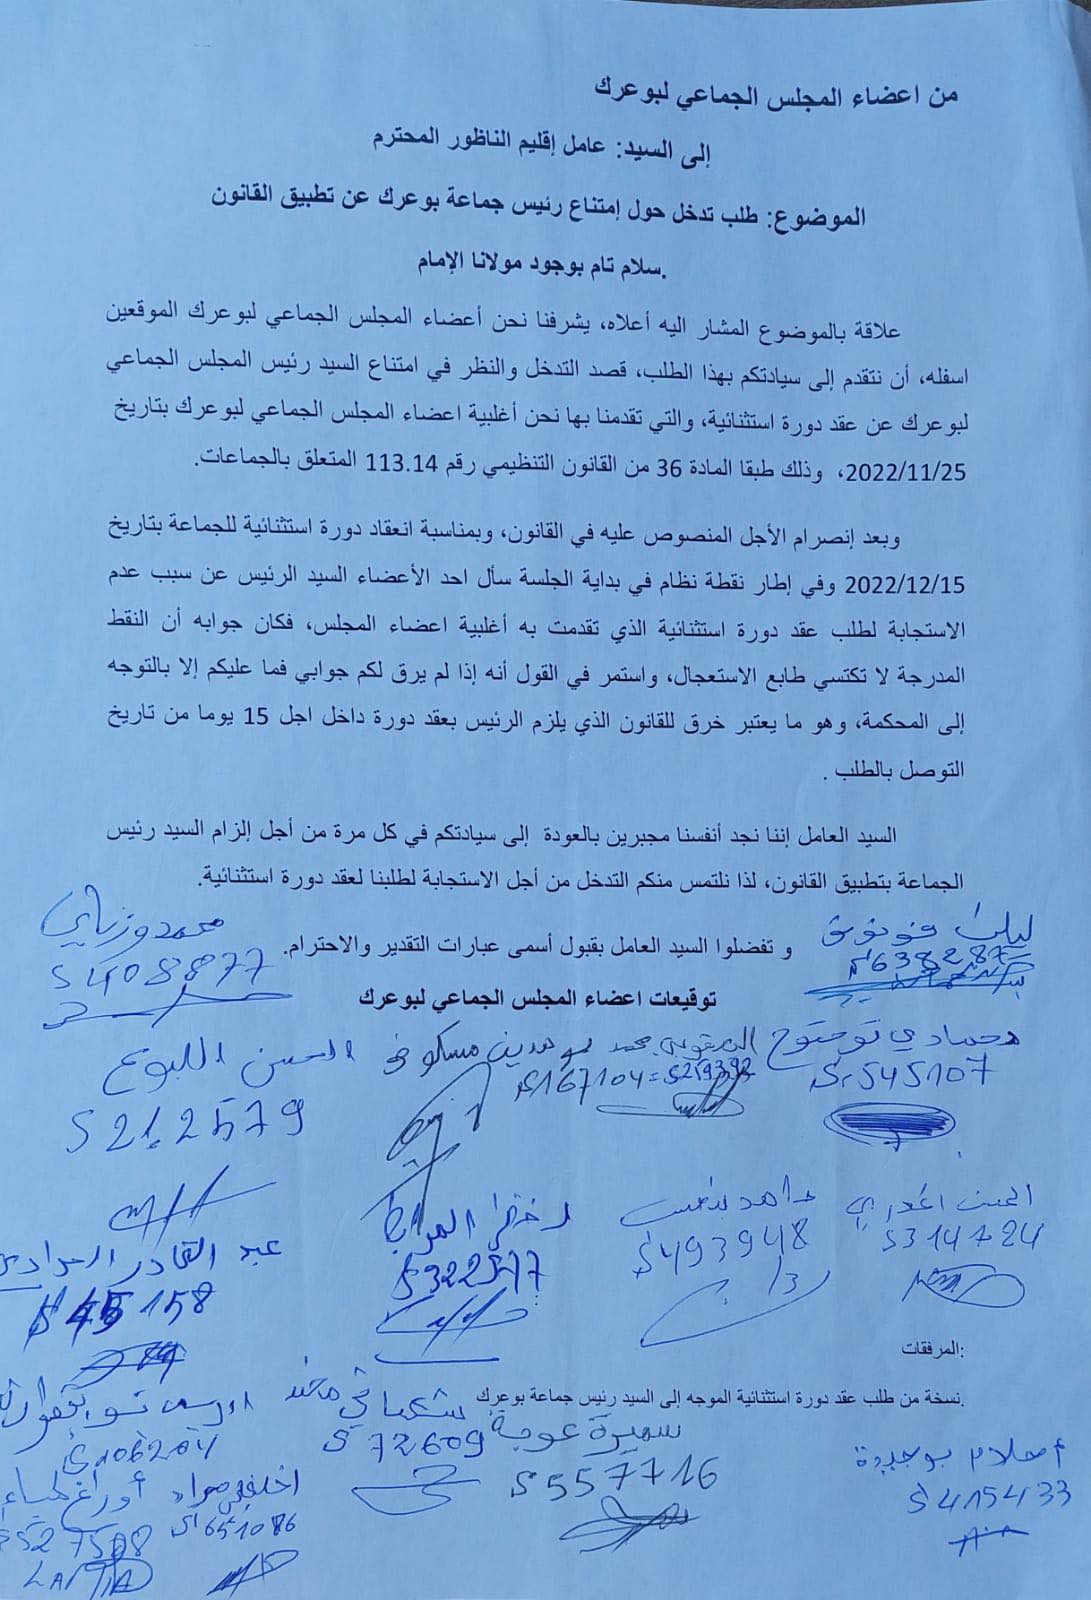 أعضاء المجلس الجماعي لبوعرك يراسلون عامل الإقليم بسبب "امتناع الرئيس عن تطبيق القانون"